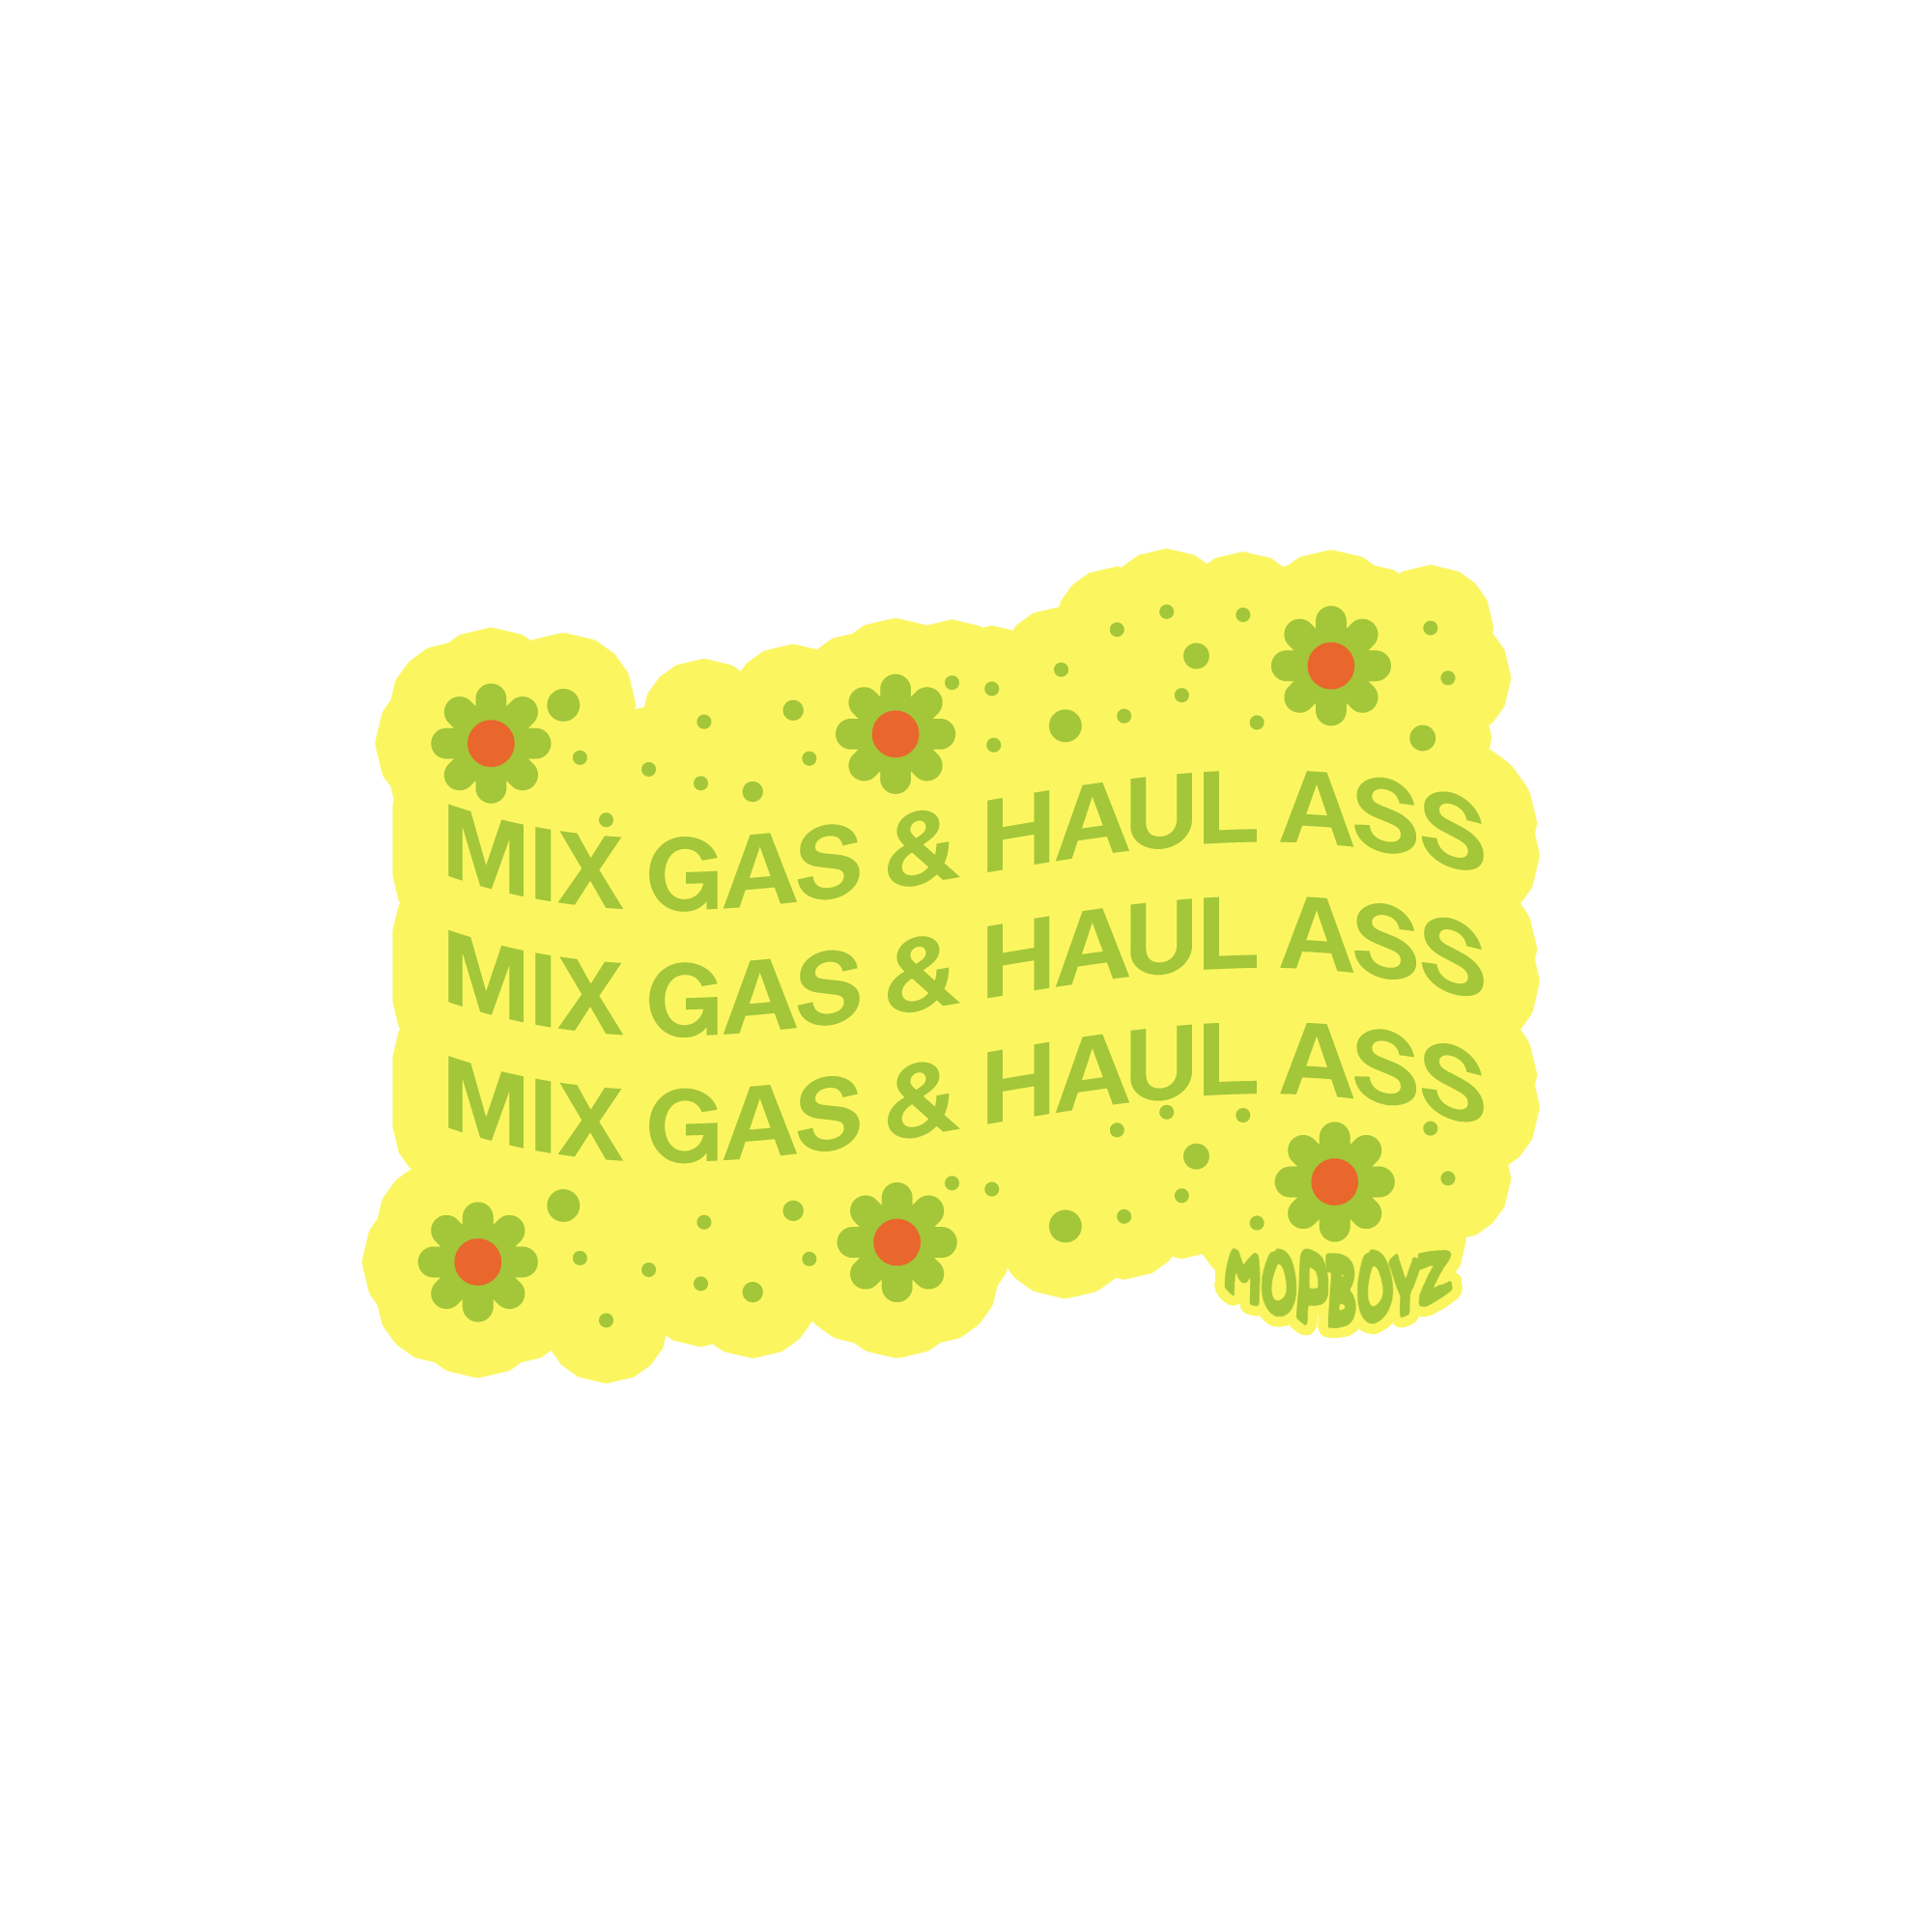 MIX GAS & HAUL ASS SLAP